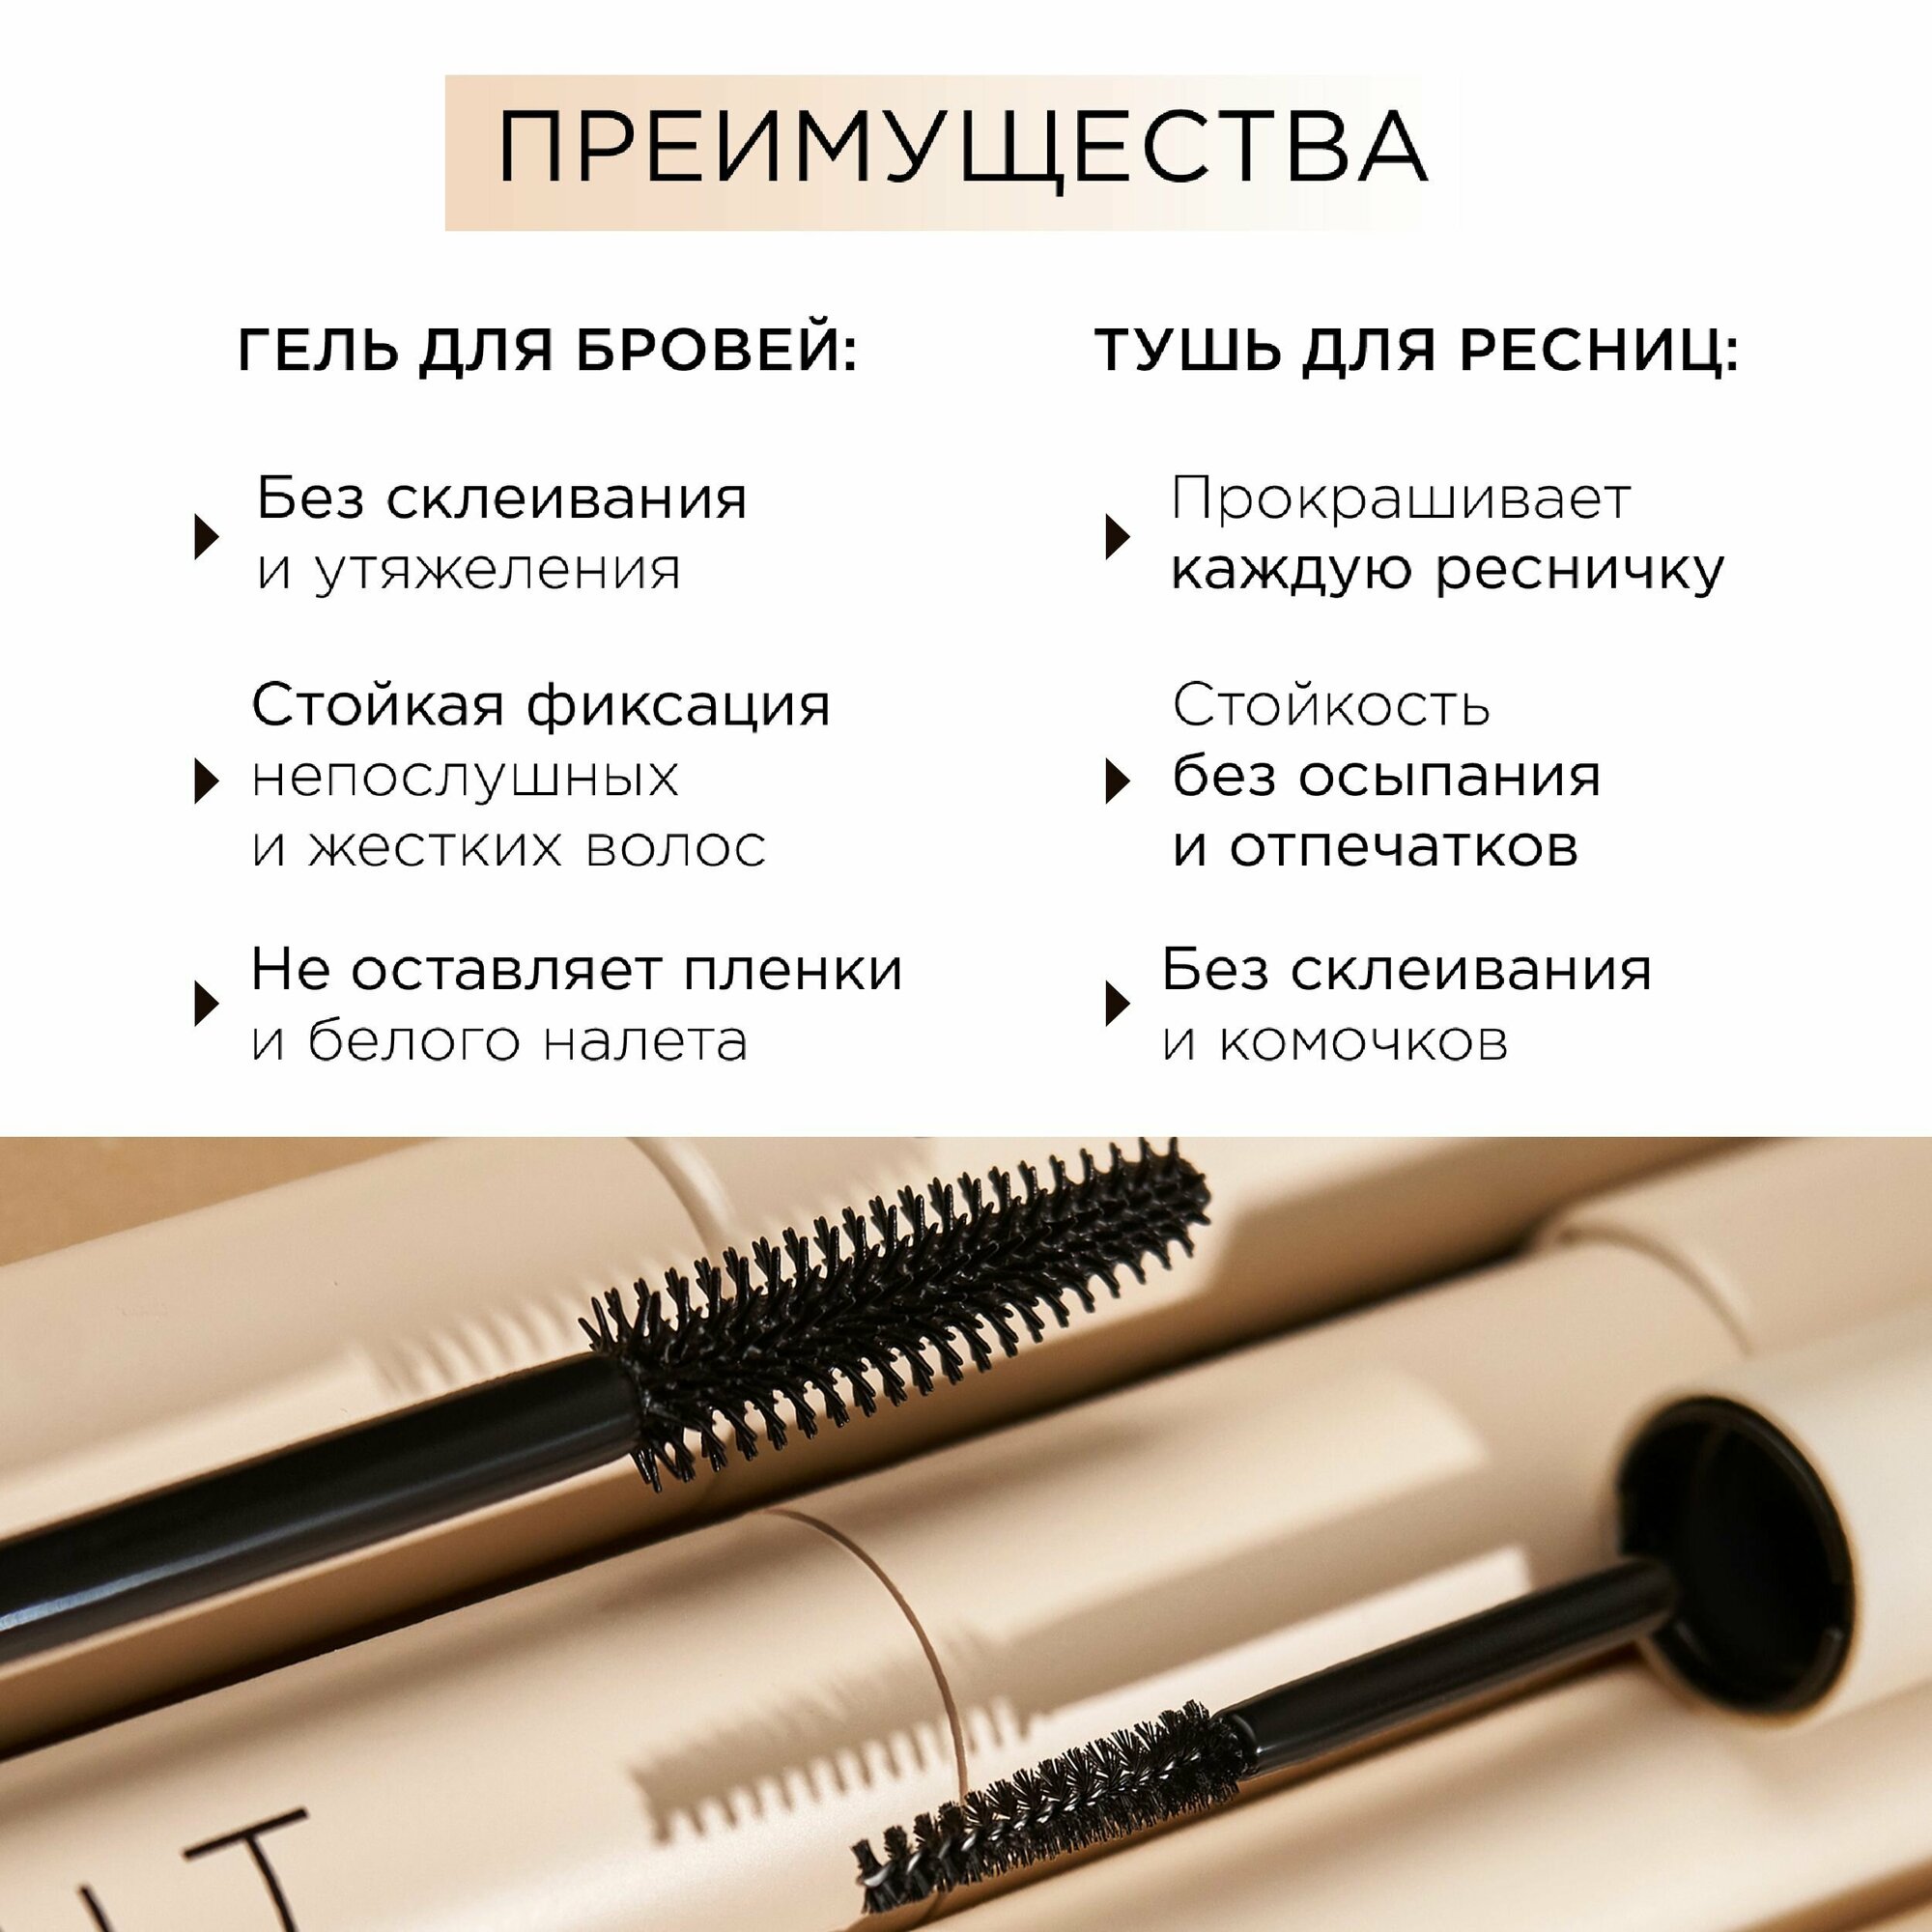 Набор косметики MIXIT для макияжа: фиксирующий прозрачный гель для бровей, ультрачерная тушь для ресниц, гидрофильное масло для умывания лица